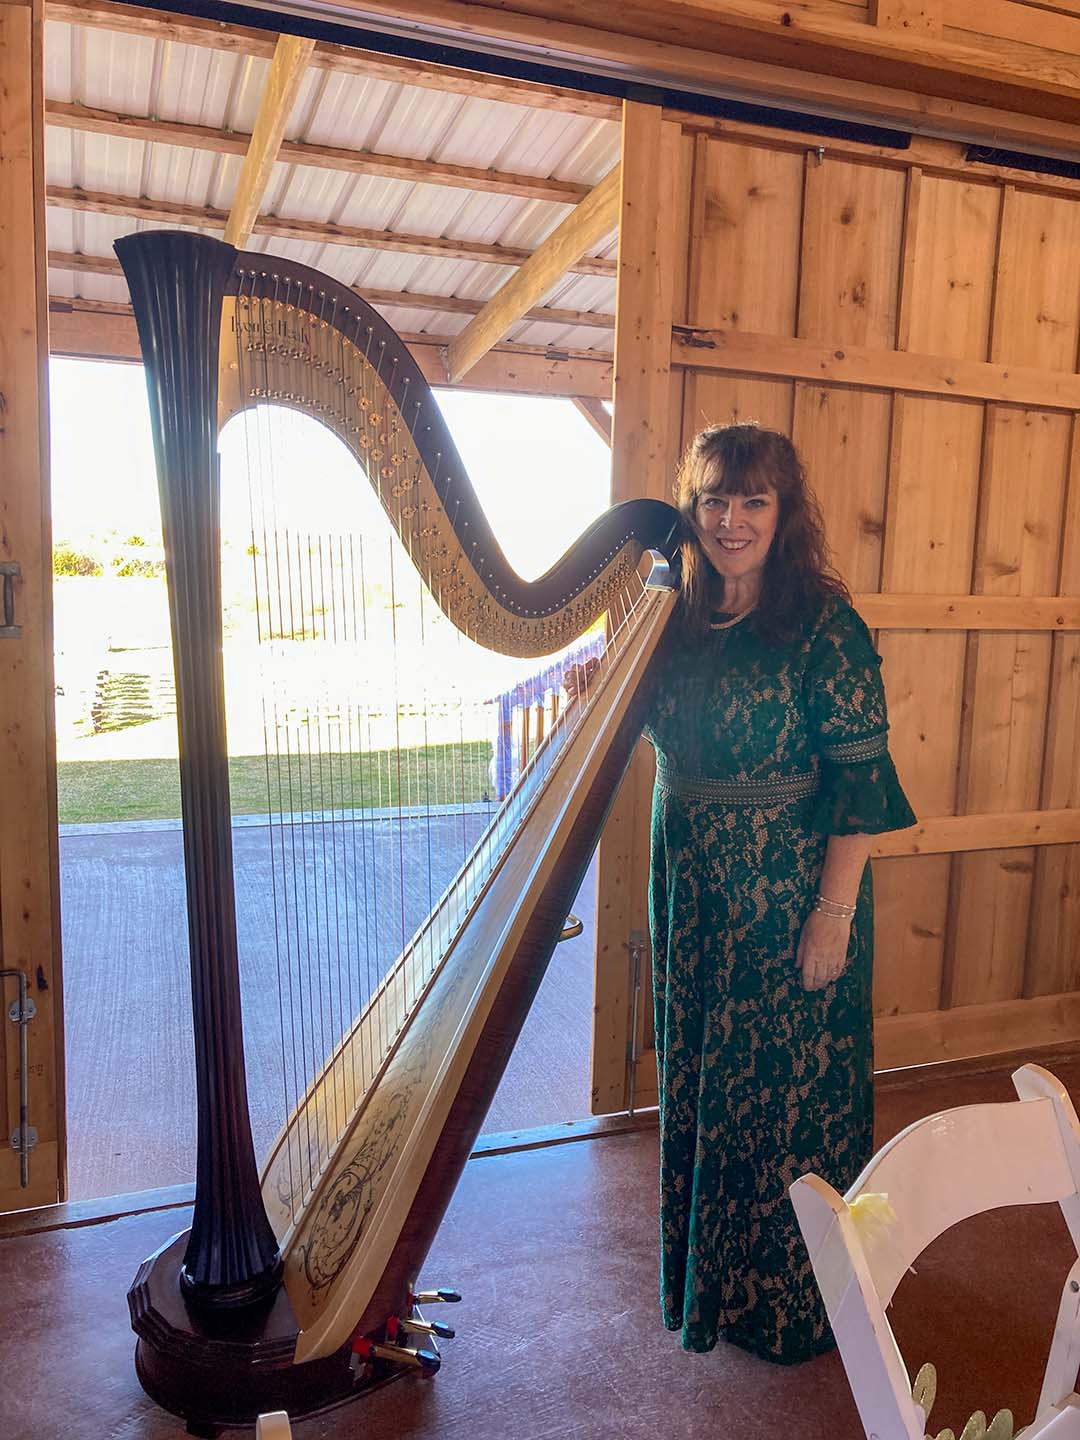 Sherri with her harp